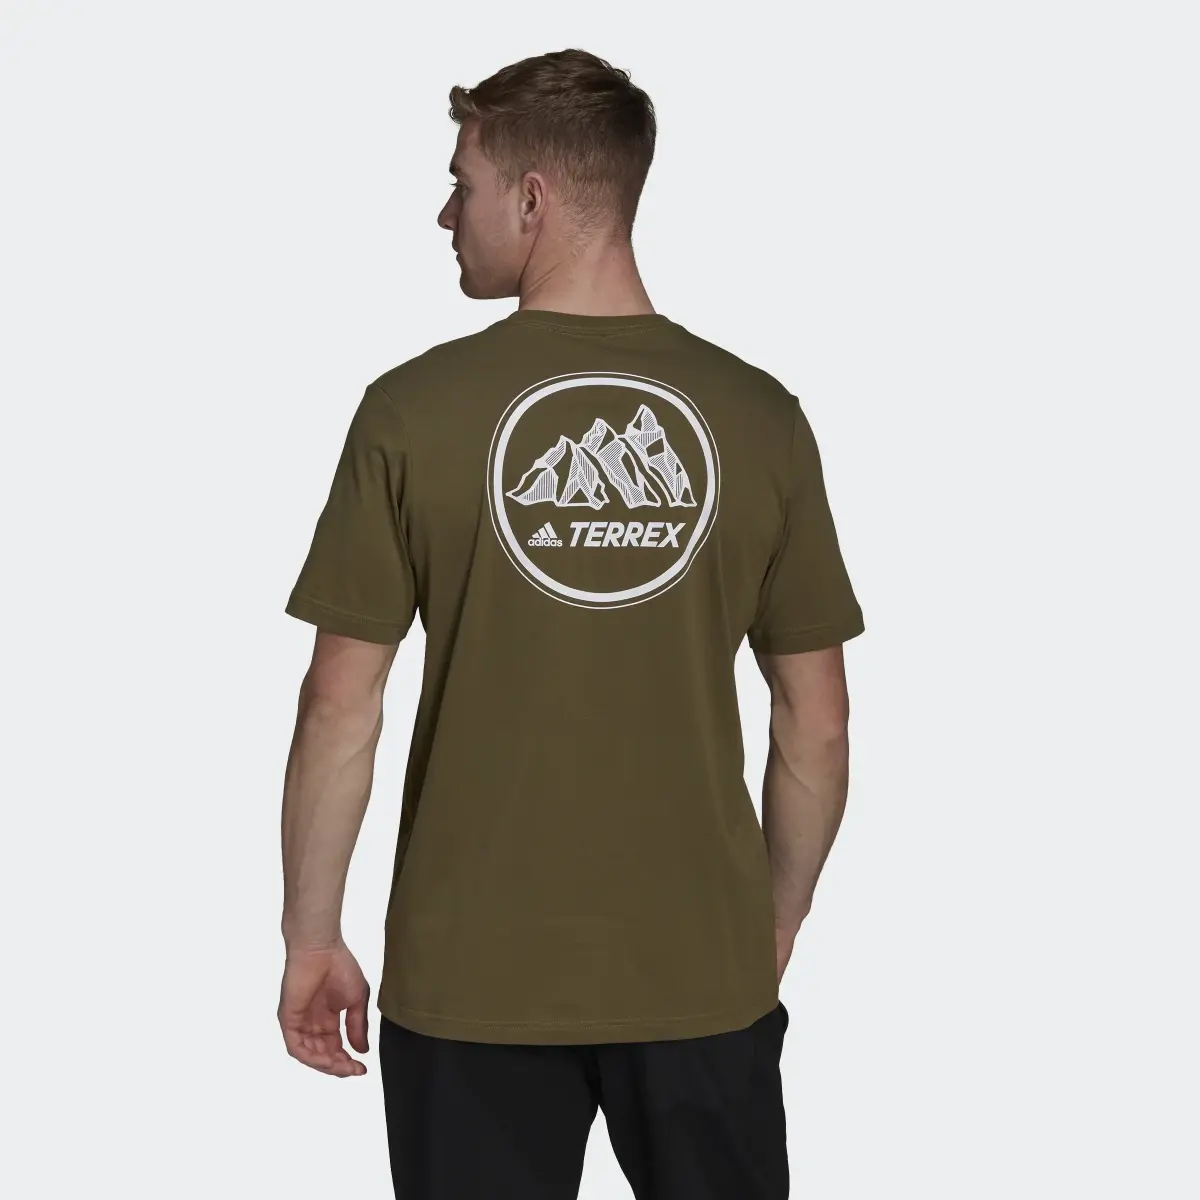 Adidas Camiseta Terrex Mountain Graphic. 3